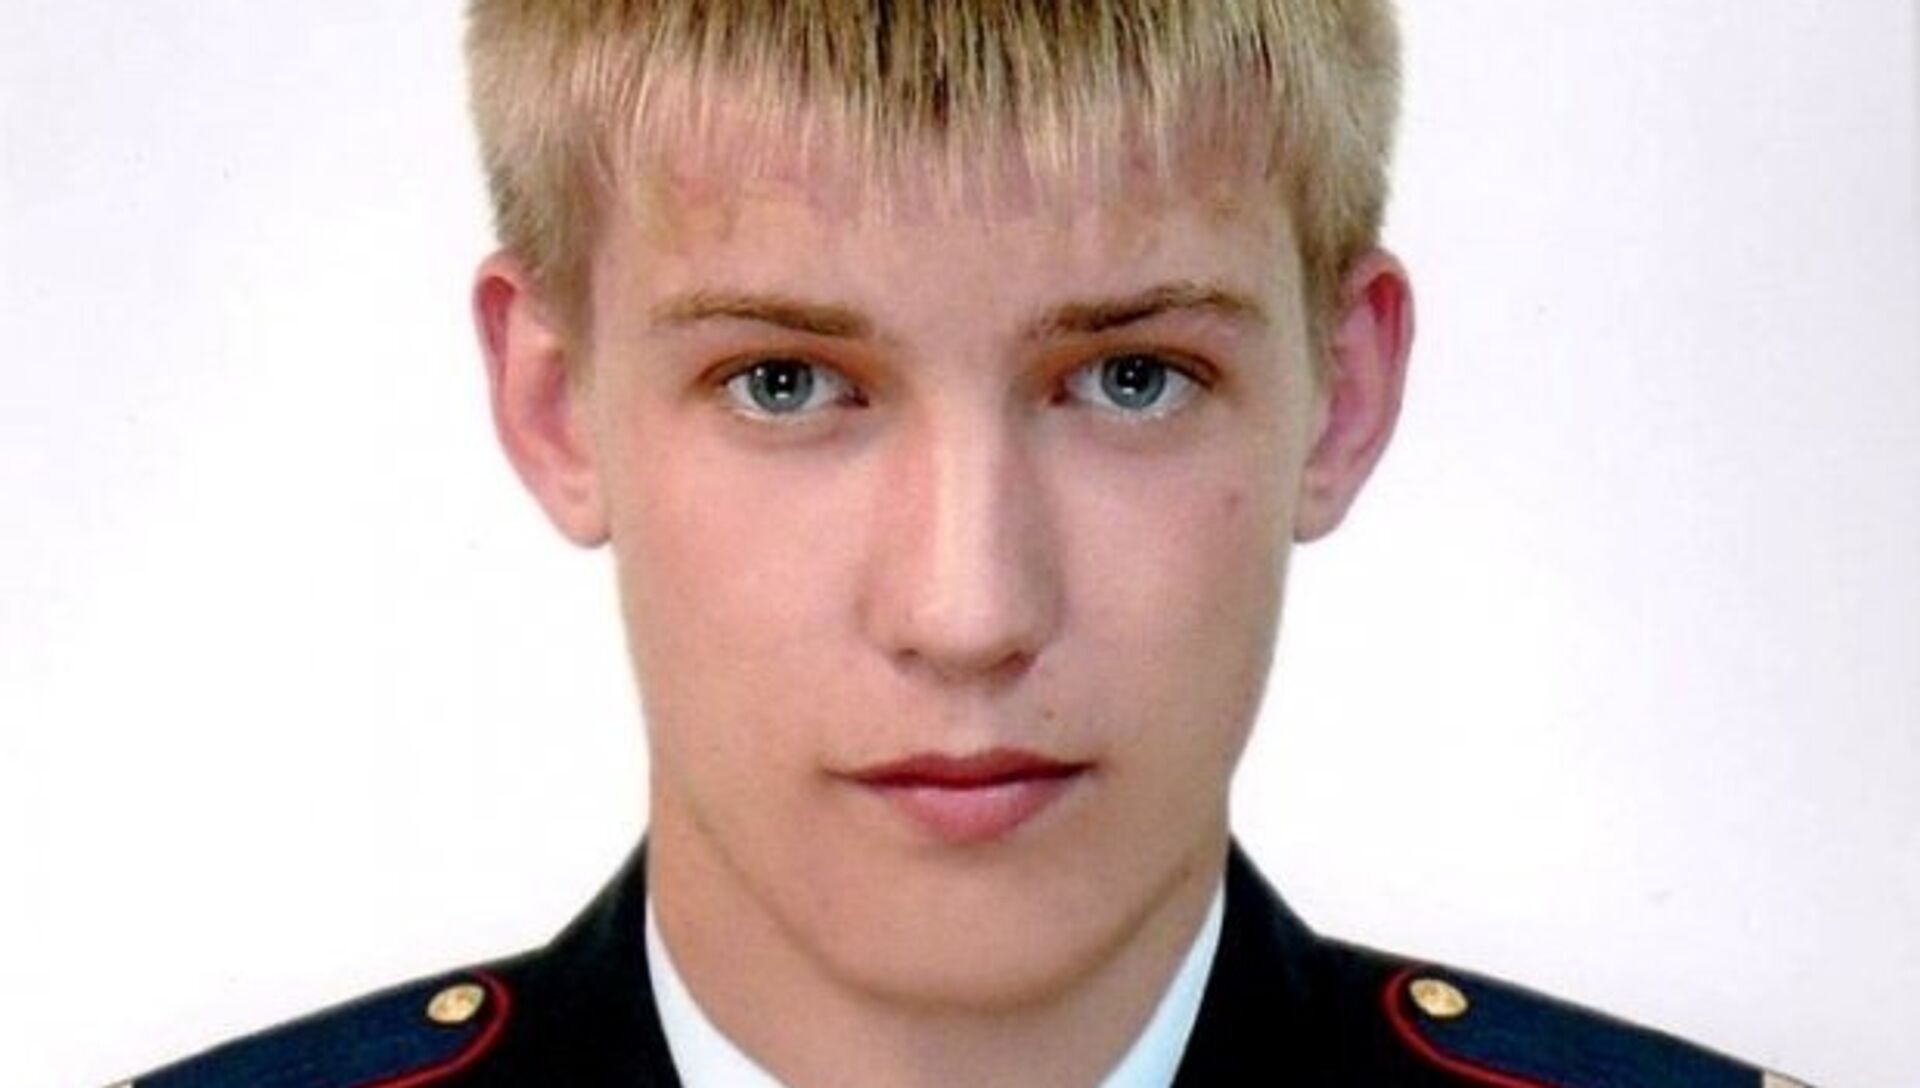 Пинигин Павел Сергеевич полиция Новосибирск